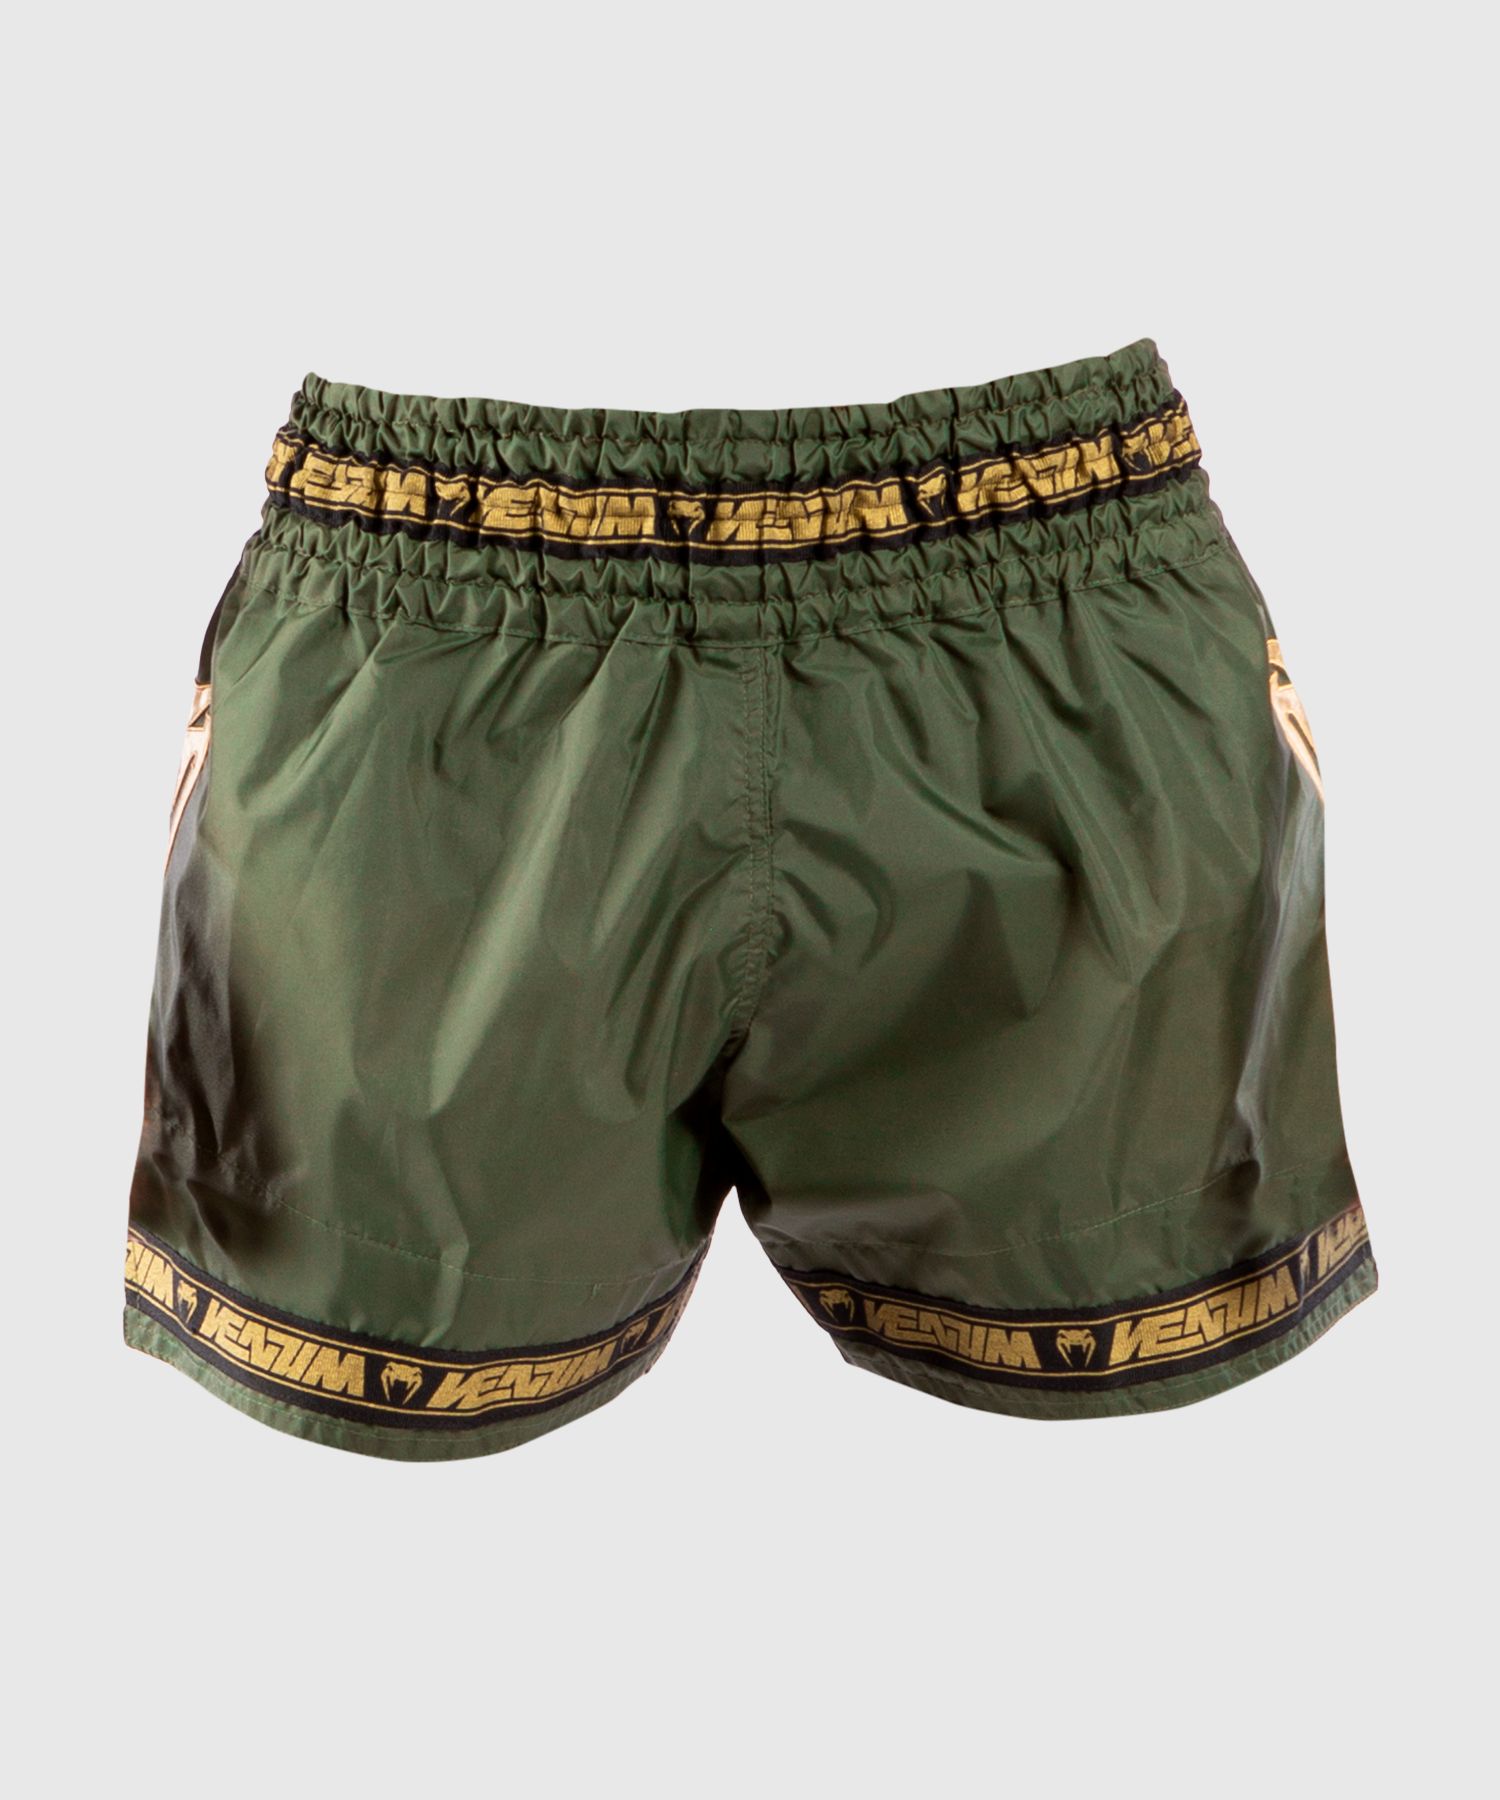 Pantalones cortos Venum Muay Thai Parachute - Caqui/Dorado